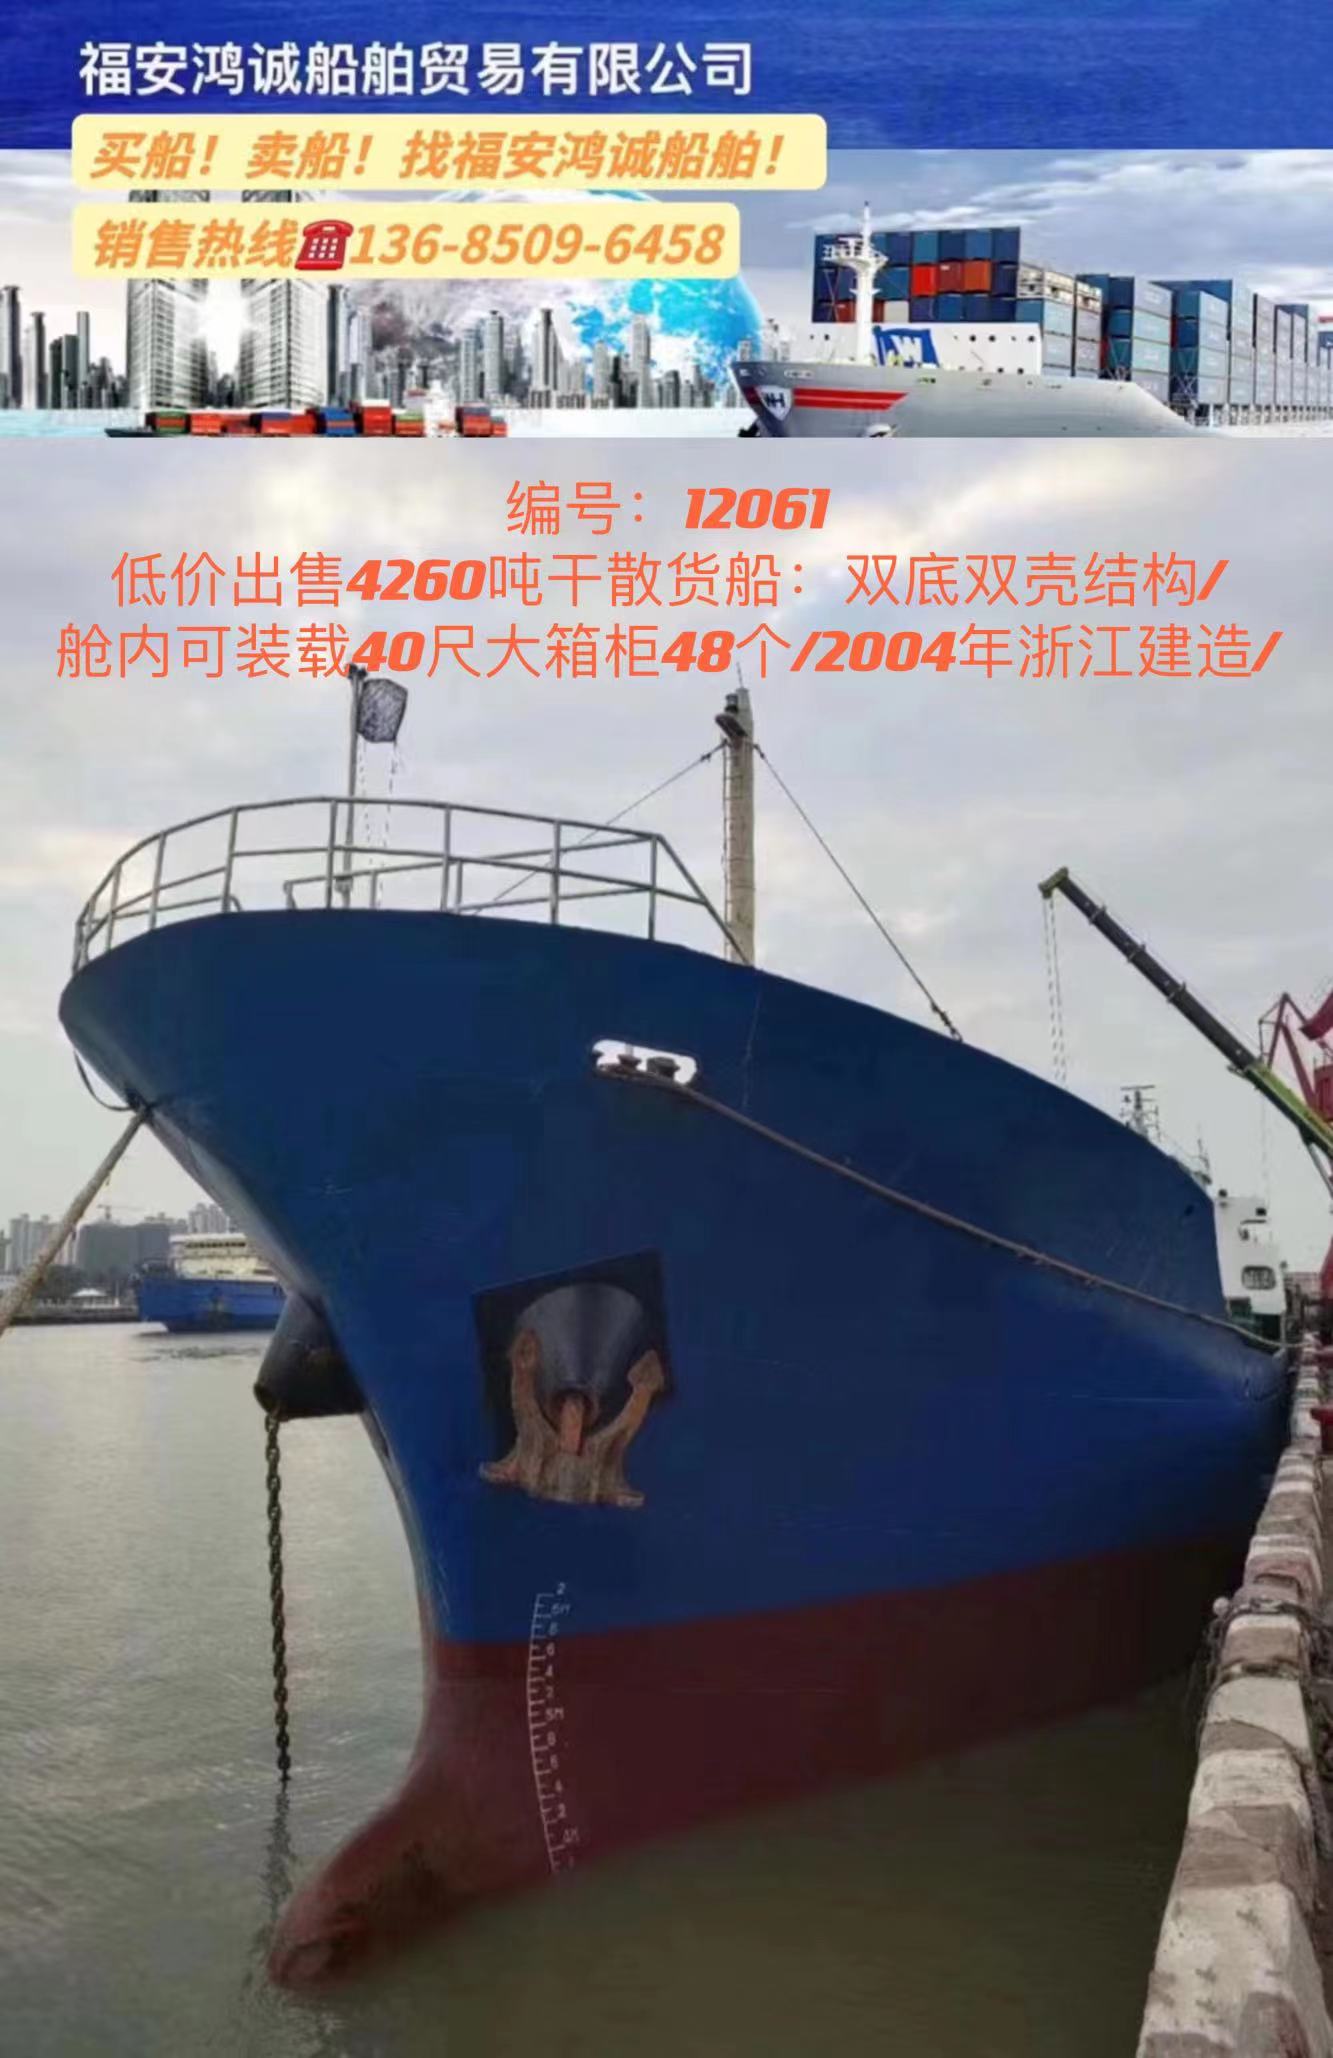 低价出售4260吨干散货船： 双底双壳结构/ 舱内可装载40尺大箱柜48个/ 2004年浙江建造/